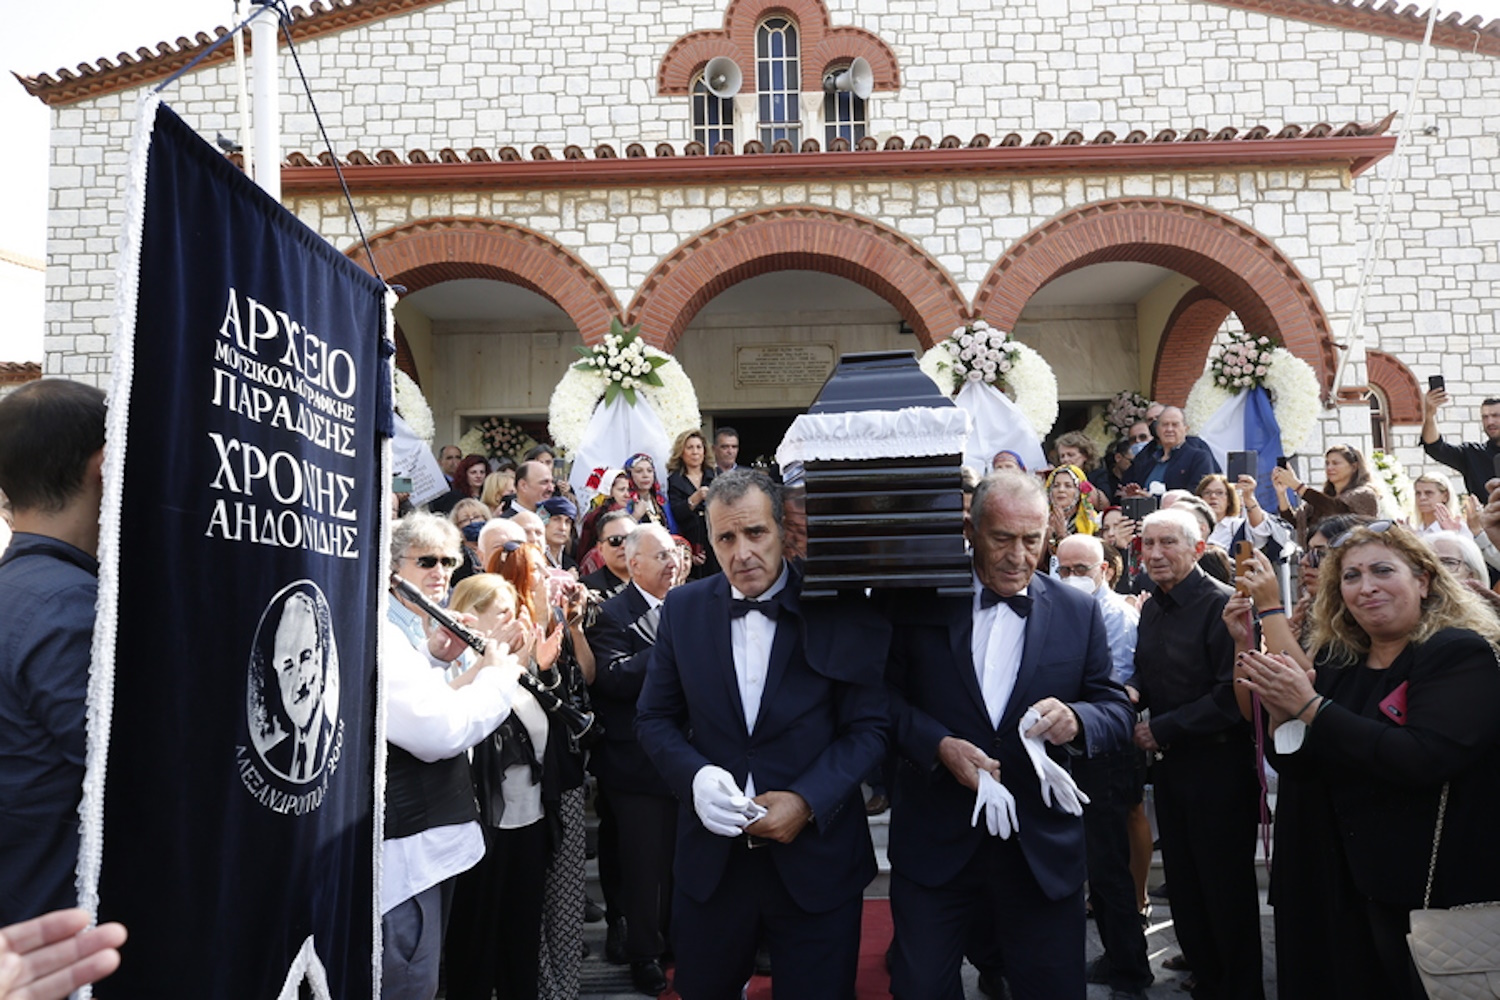 Κηδεία Χρόνη Αηδονίδη: Τελευταίο αντίο στον μεγάλο δάσκαλο του παραδοσιακού τραγουδιού